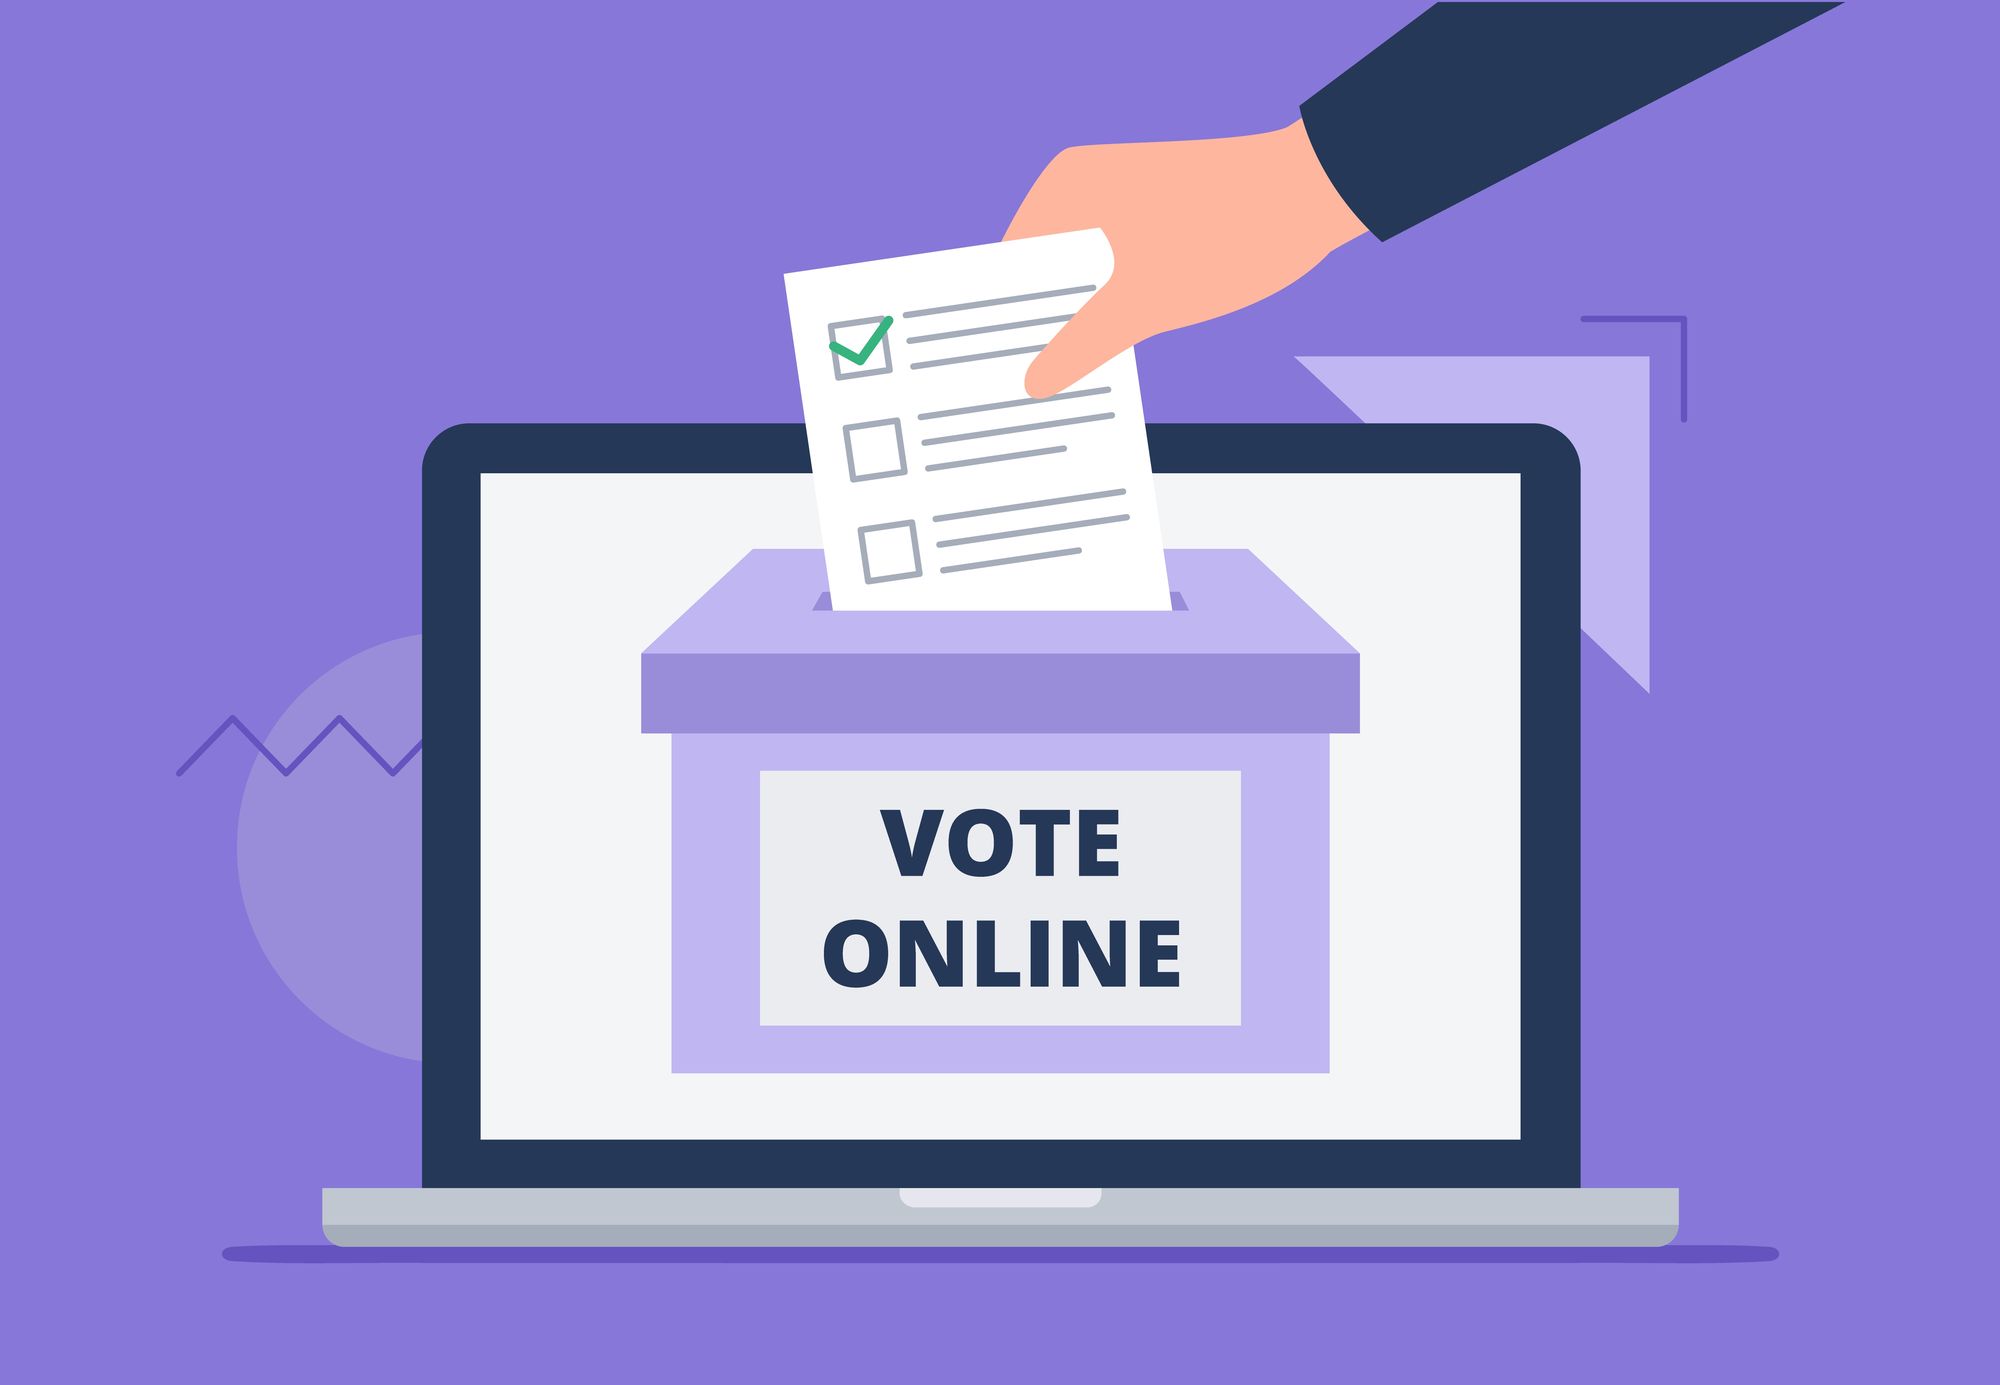 Intrusion-Test für E-Voting System erfolgreich